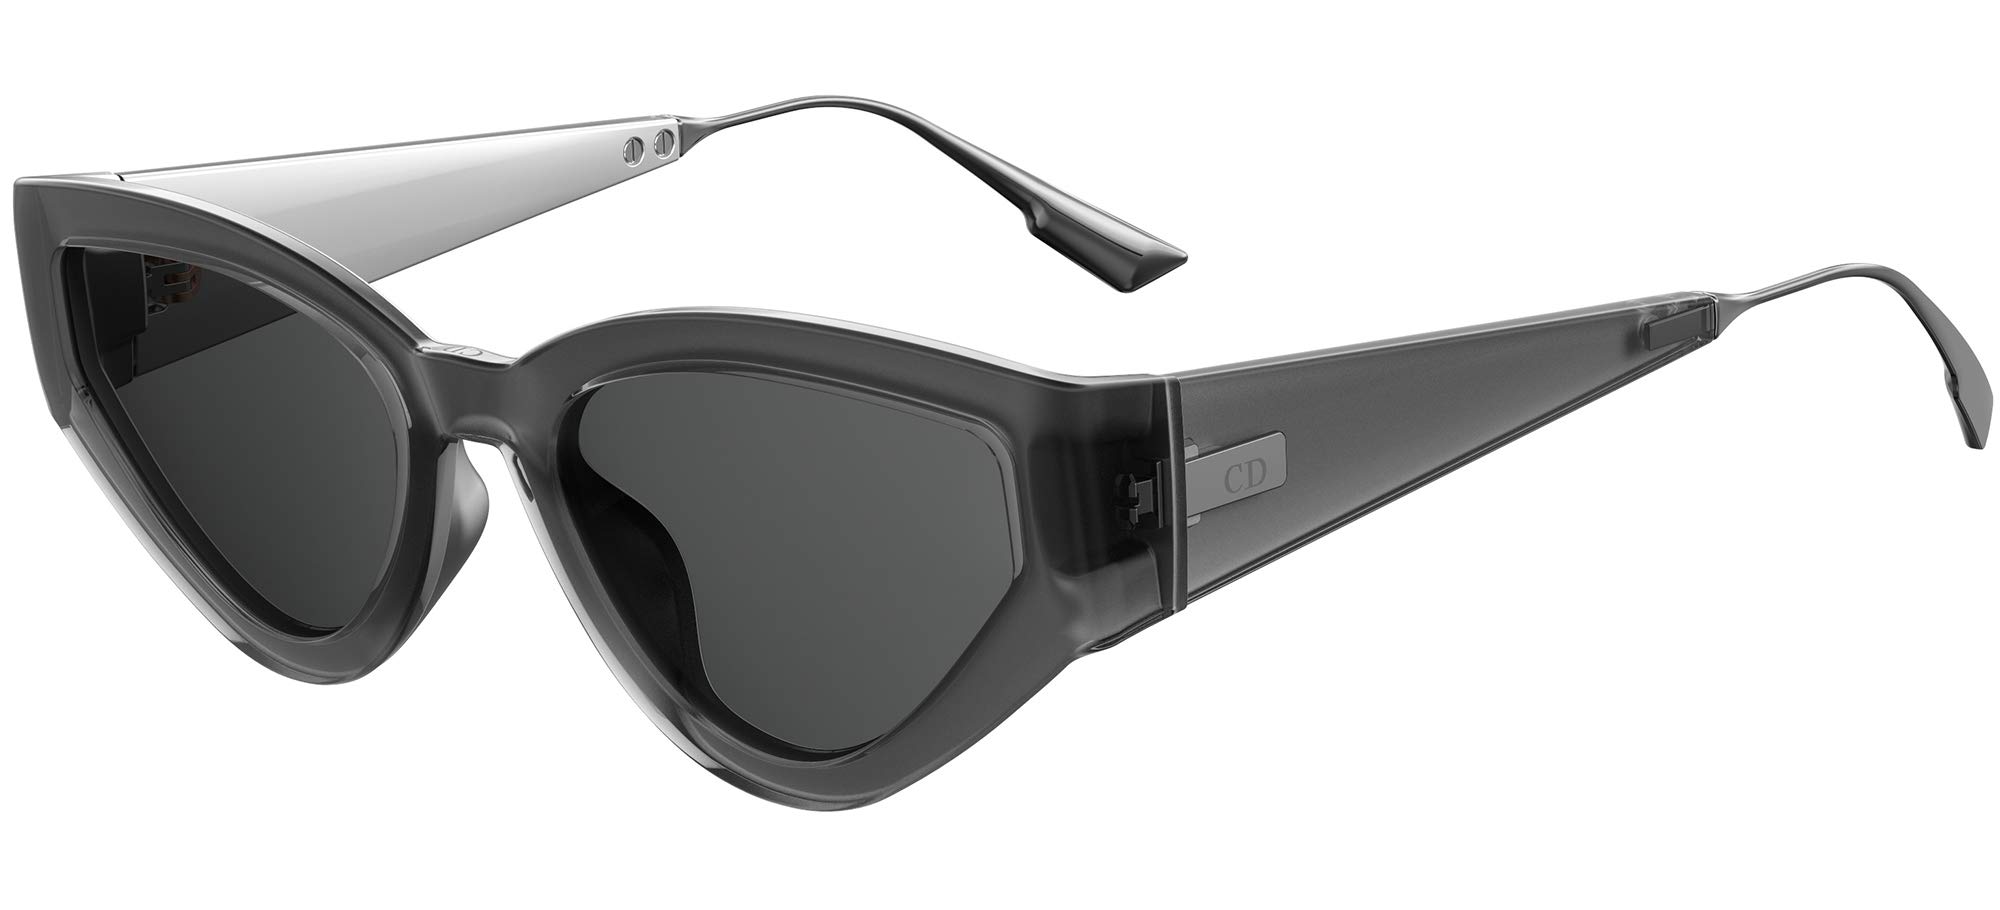 Christian Dior Sunglasses Womens DiorAttitude2 2M01I Shaded GreyBlue Lens  53mm  EyeSpecscom